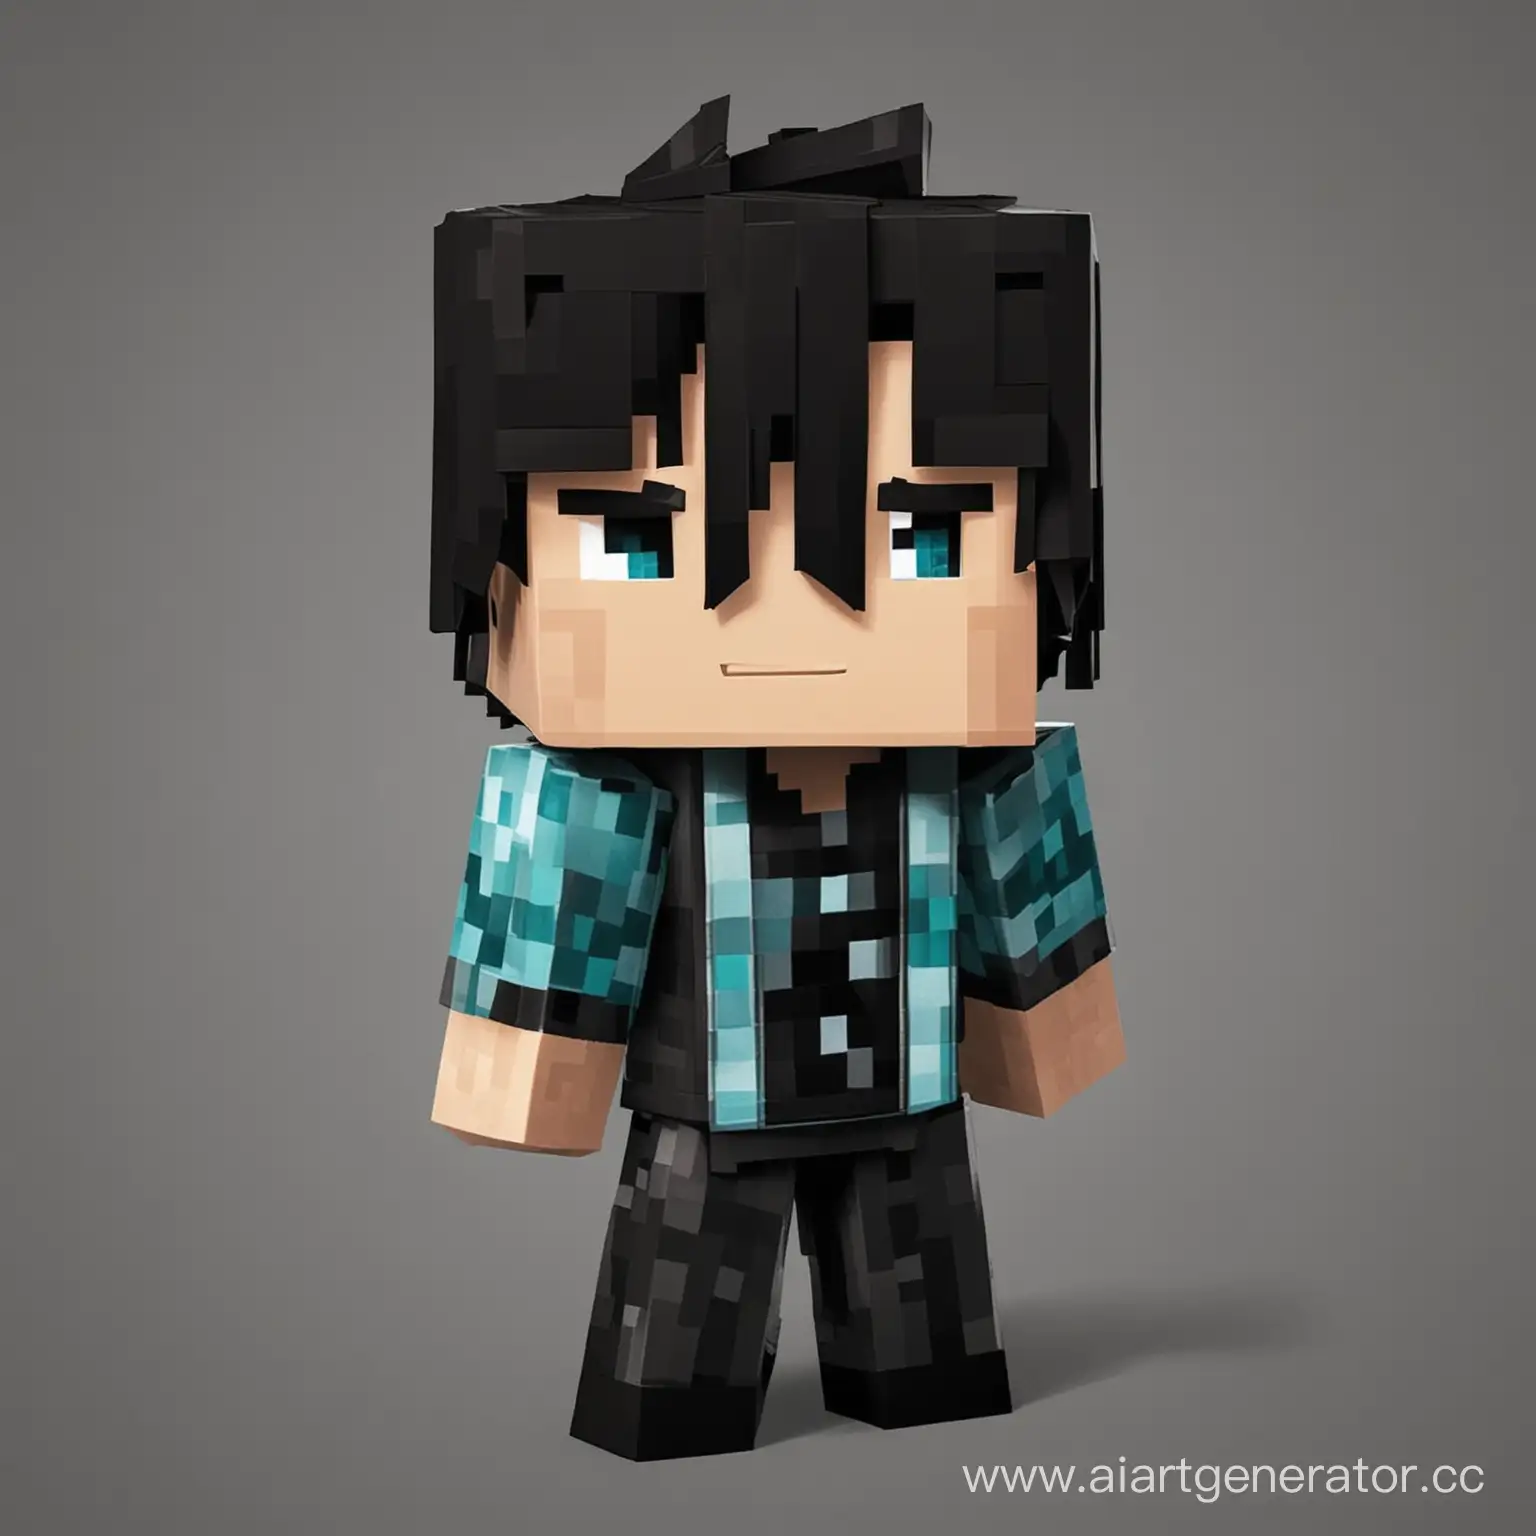 Adventurous-Boy-with-Black-Hair-in-Minecraft-World